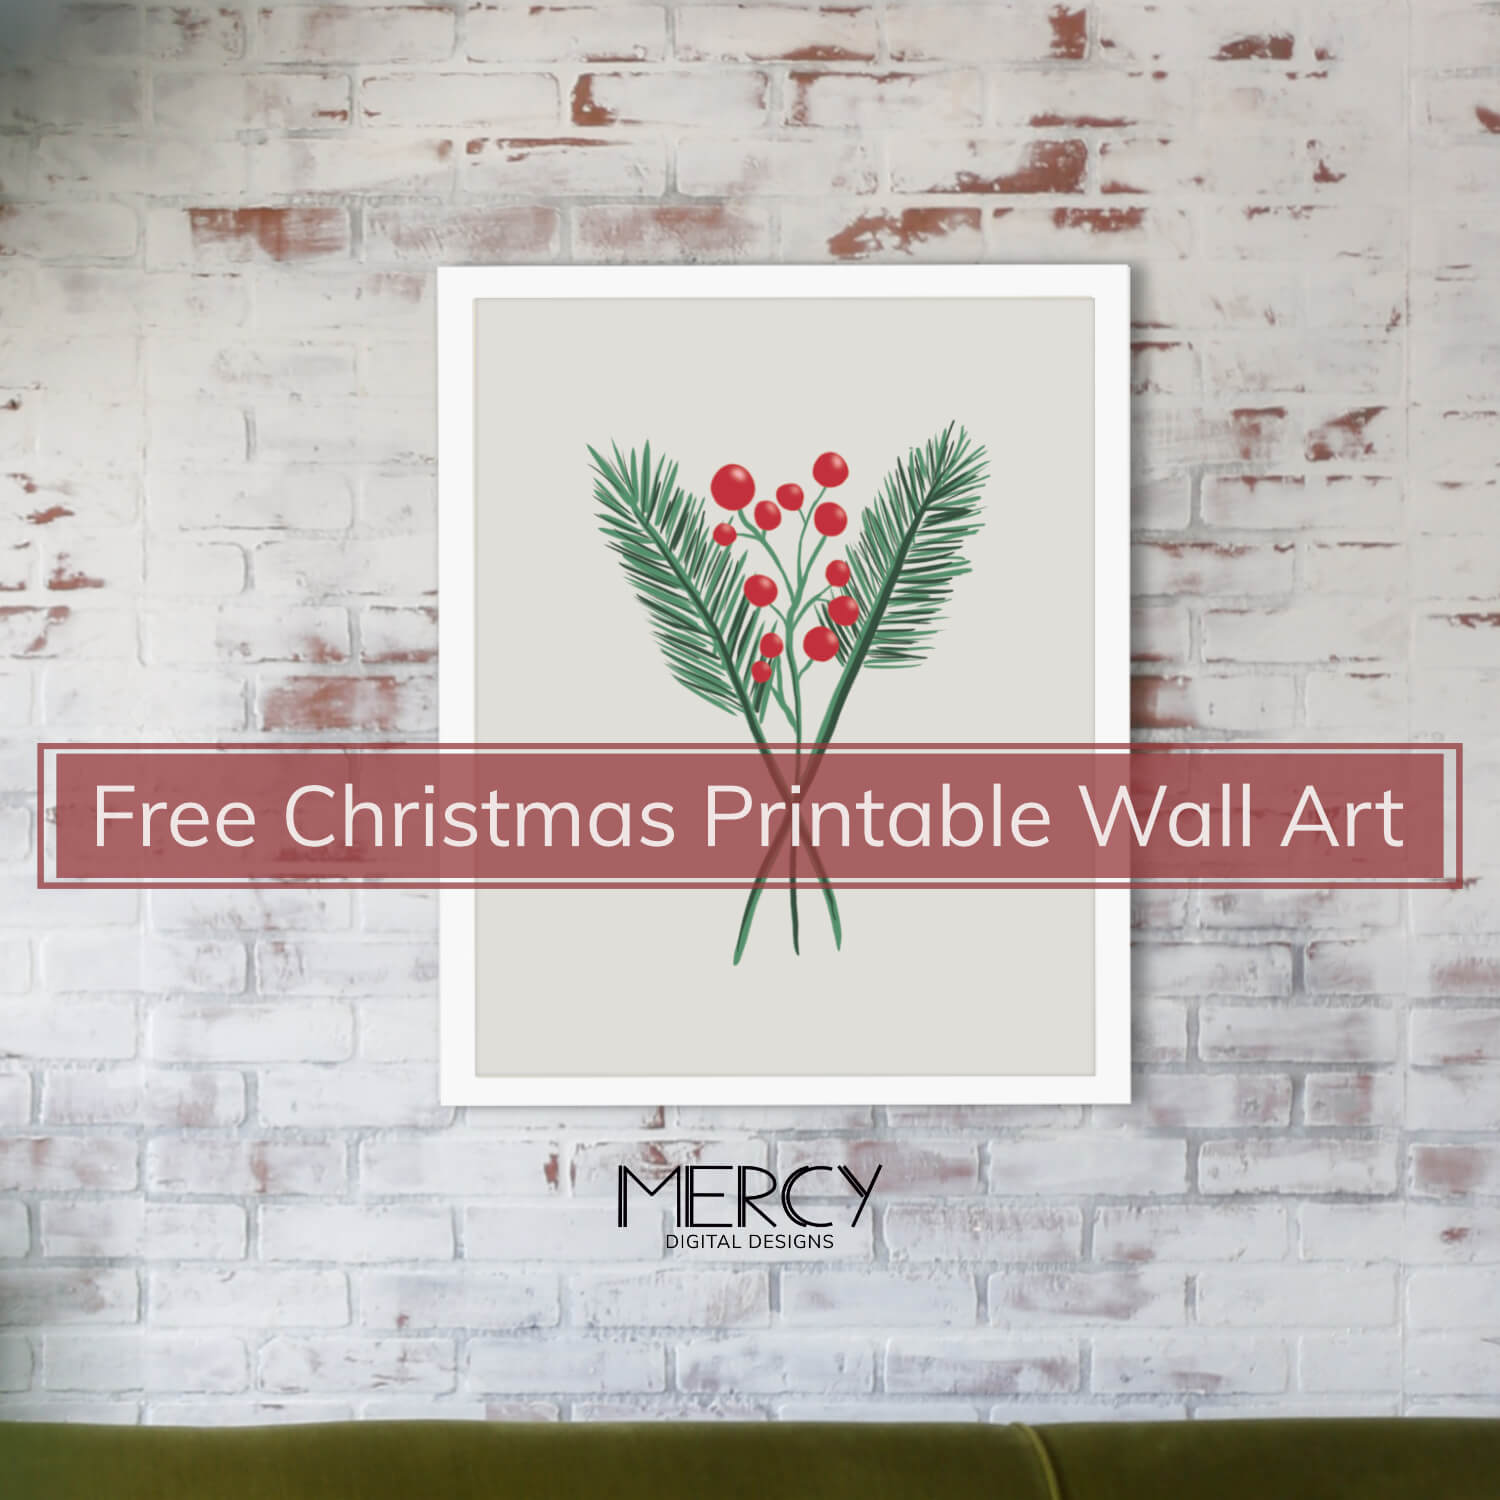 Christmas Printable Wall Art Free